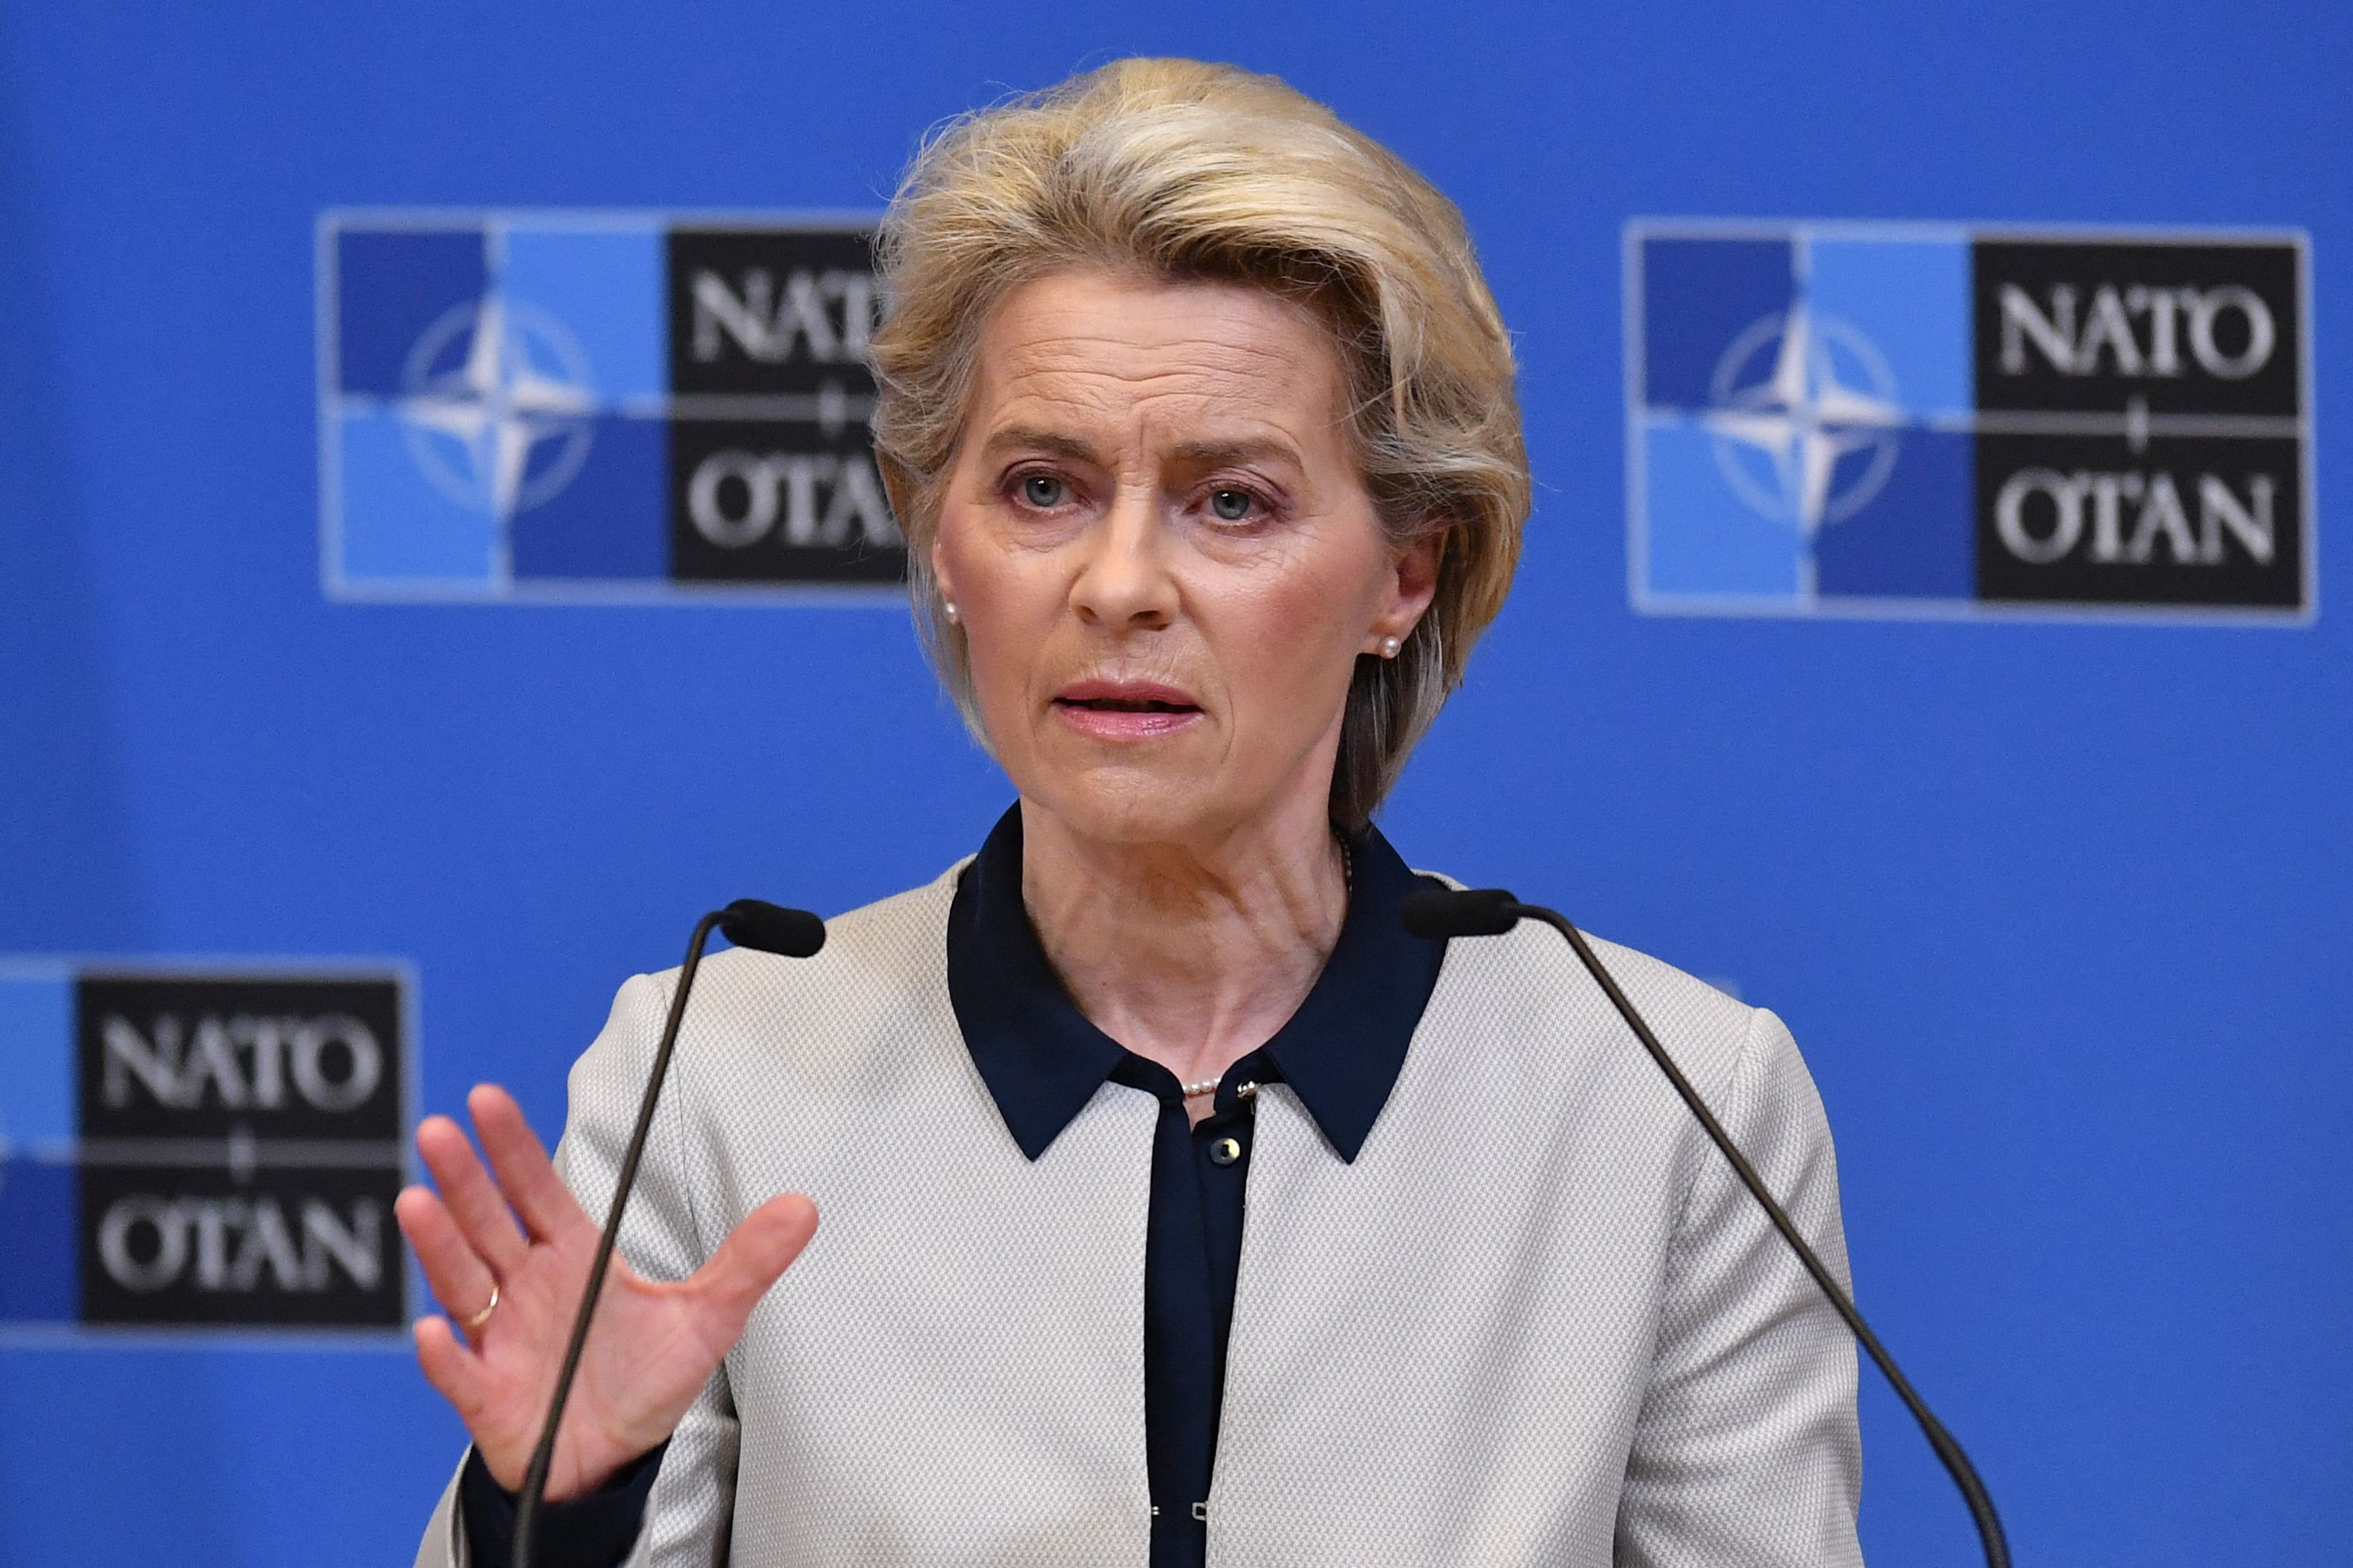 La presidente della Commissione europea Ursula von der Leyen tiene una conferenza stampa sull'azione militare russa in Ucraina il 24 febbraio, dopo i colloqui con il presidente del Consiglio europeo e il segretario generale della NATO presso la sede della NATO a Bruxelles, in Belgio.